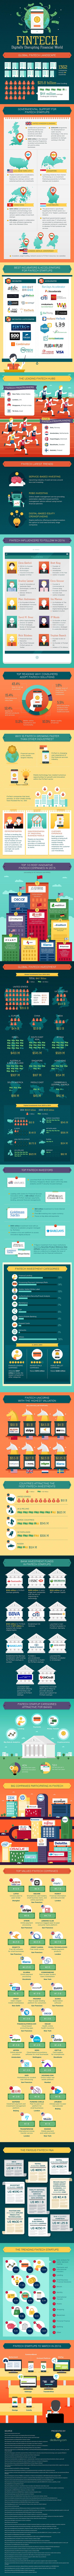 fintech-disrupting-financial-world